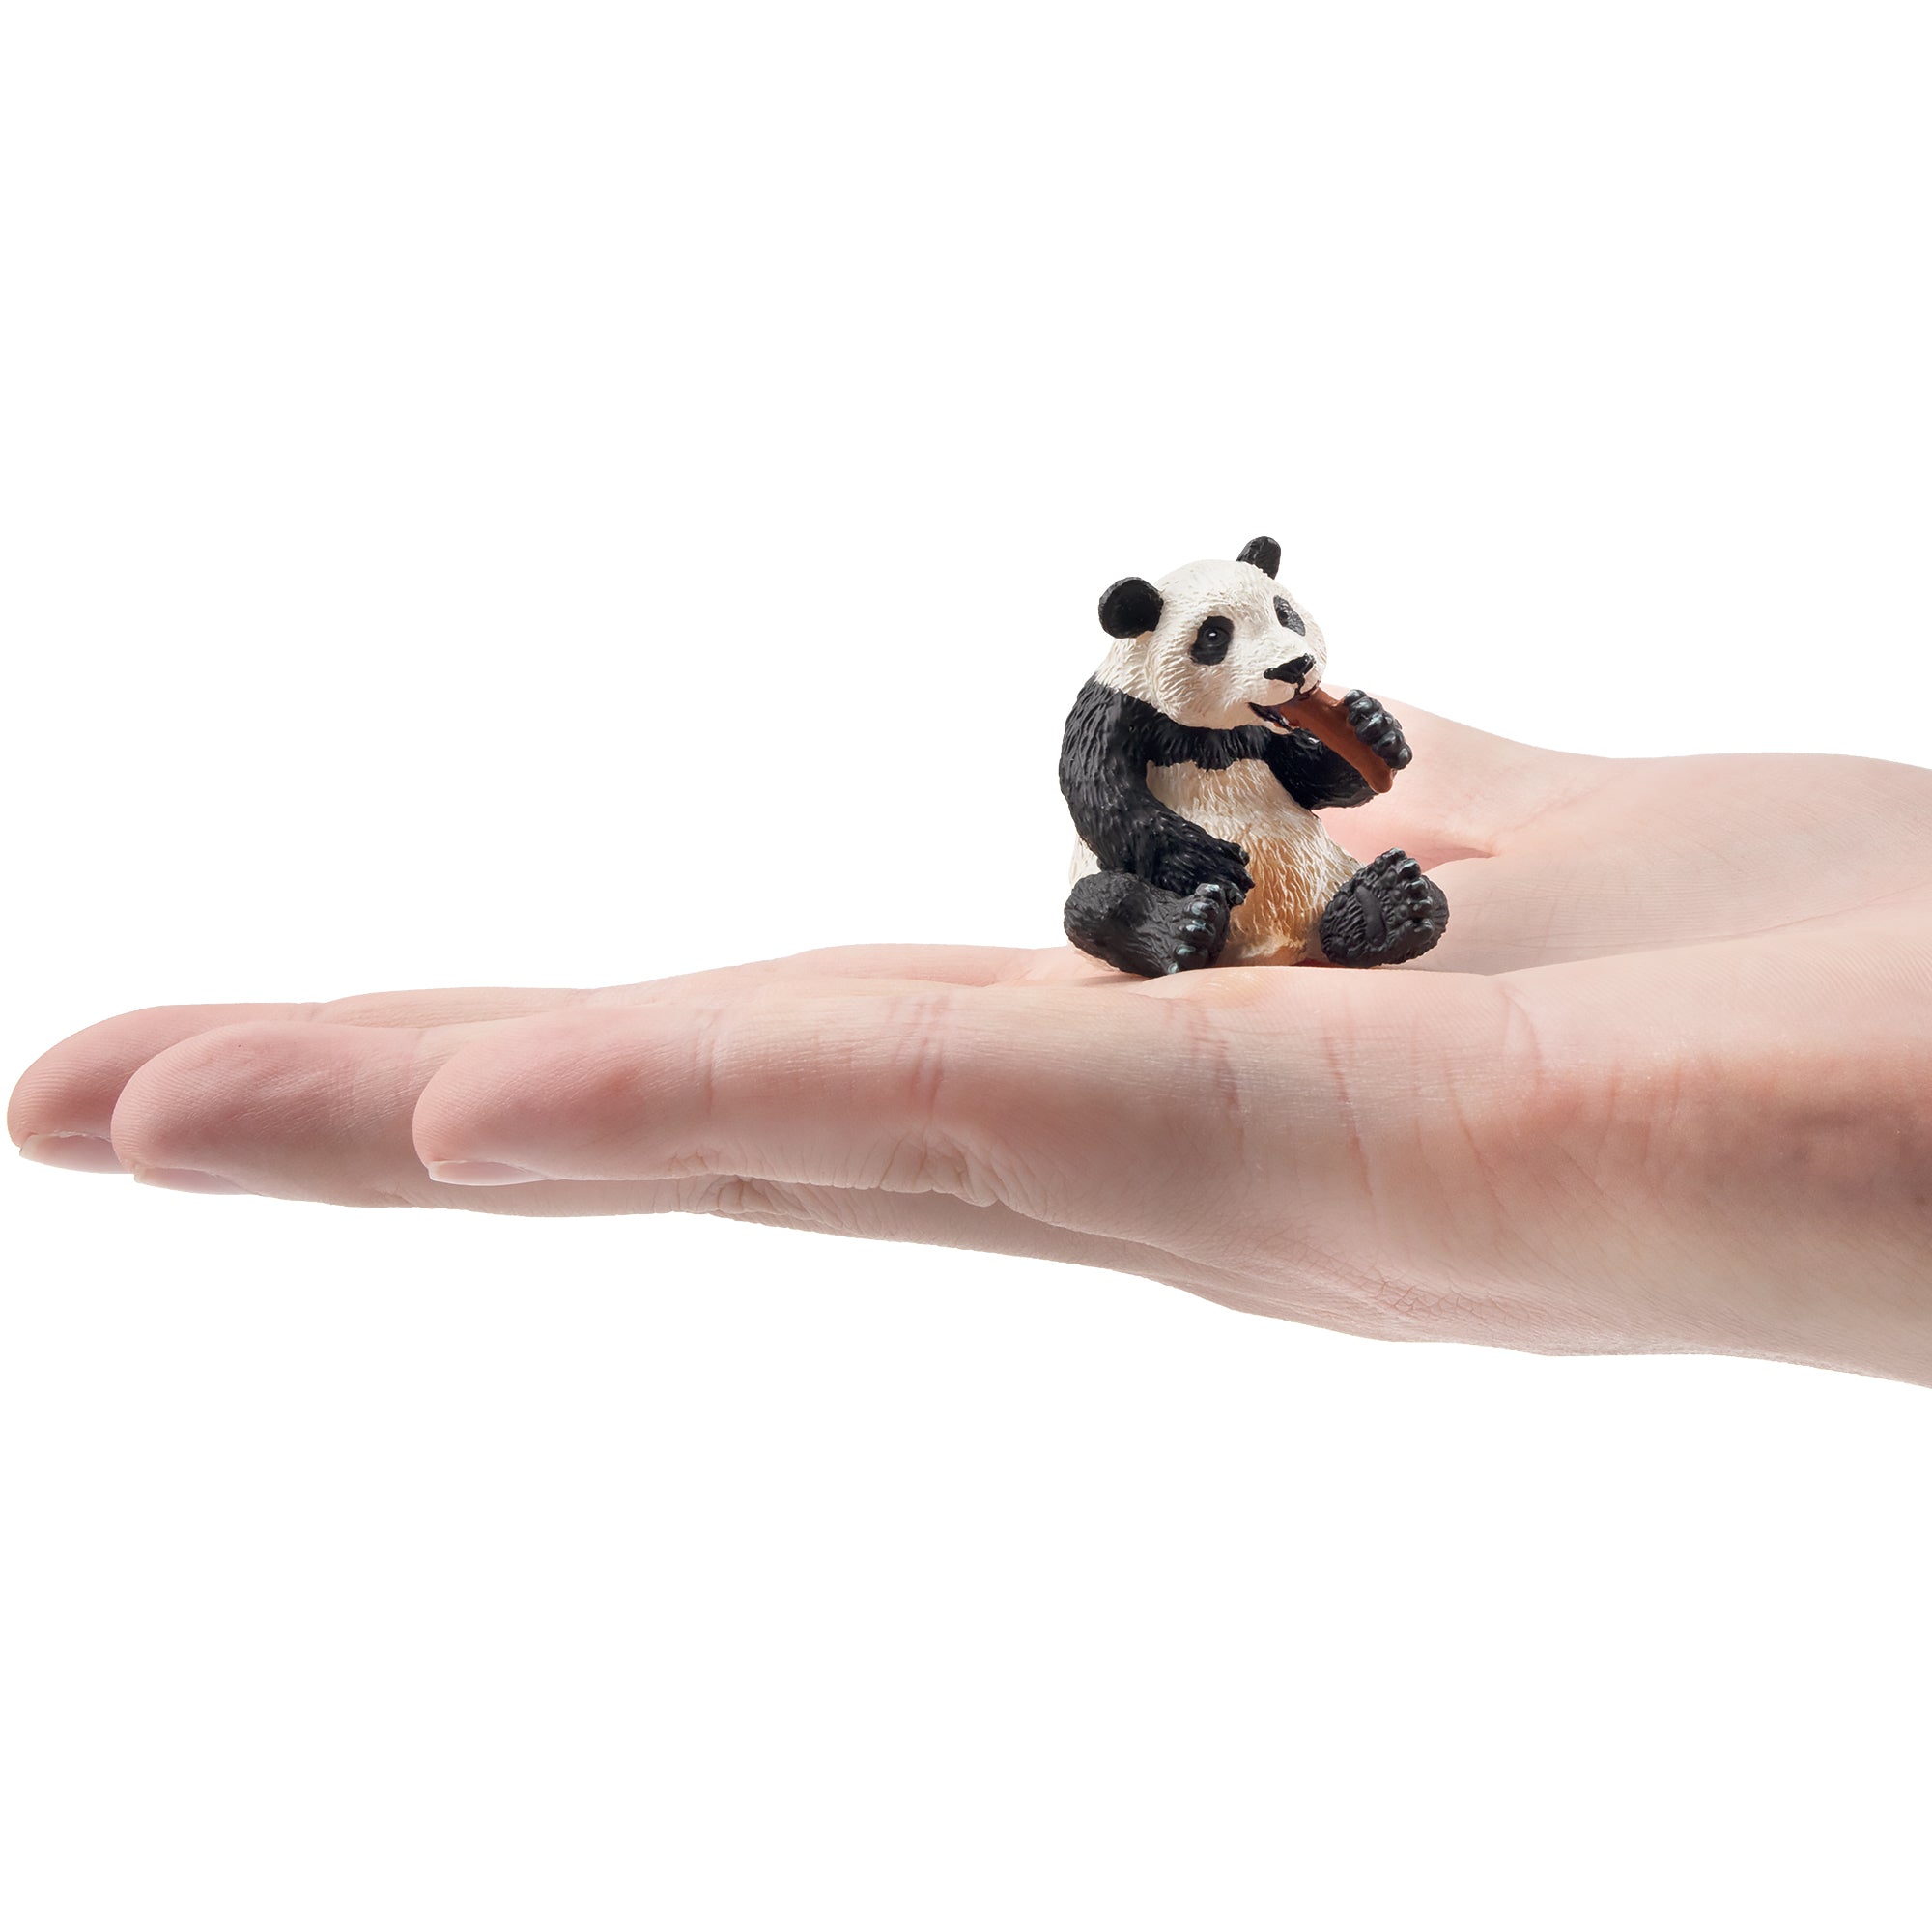 Toymany Sitting Panda Cub Figurine Toy-on hand